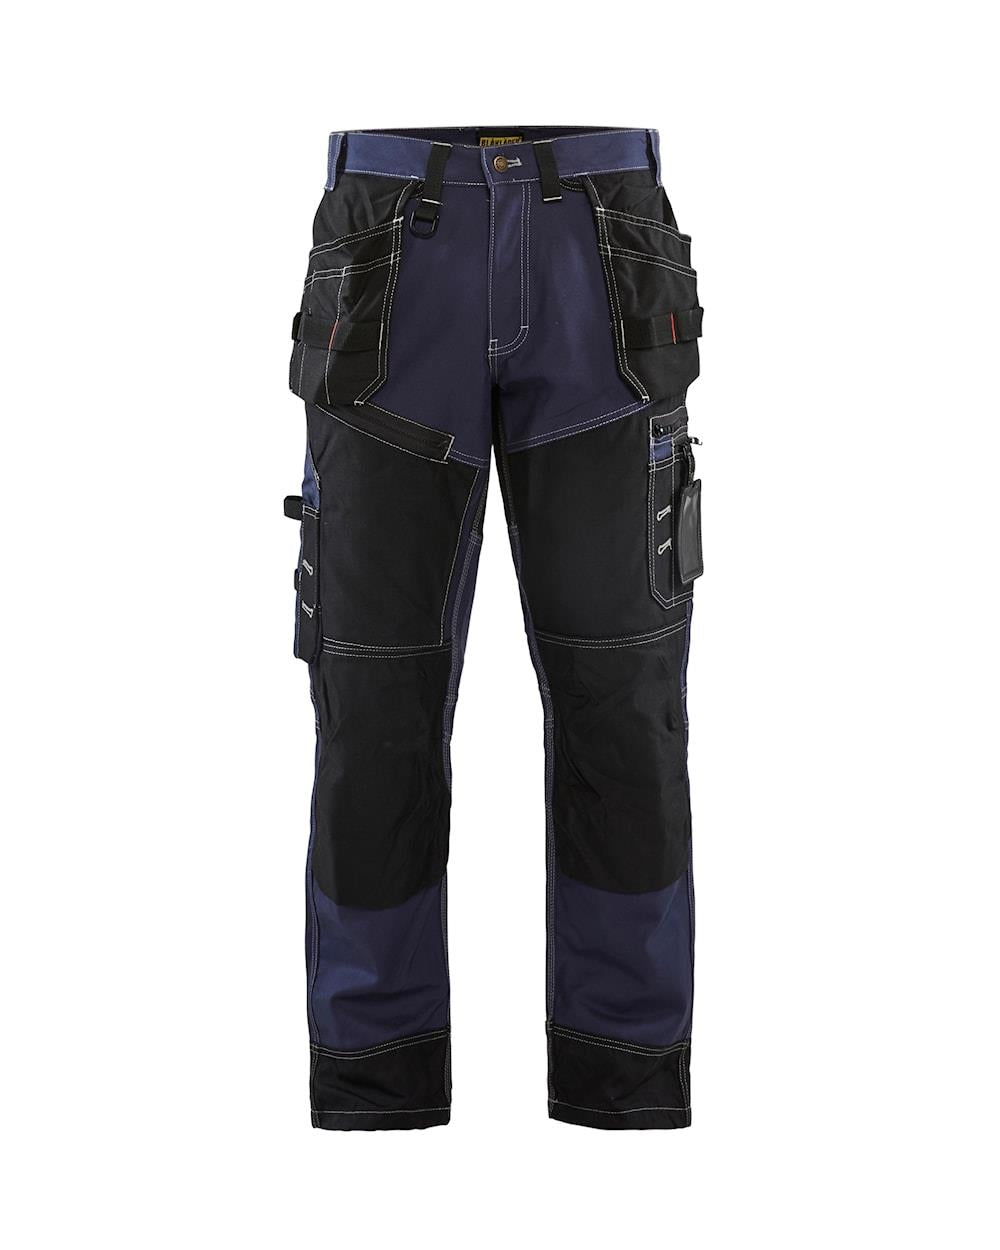 Blaklader Craftsman X1500 navy/black men's cotton twill holster work trouser #1500